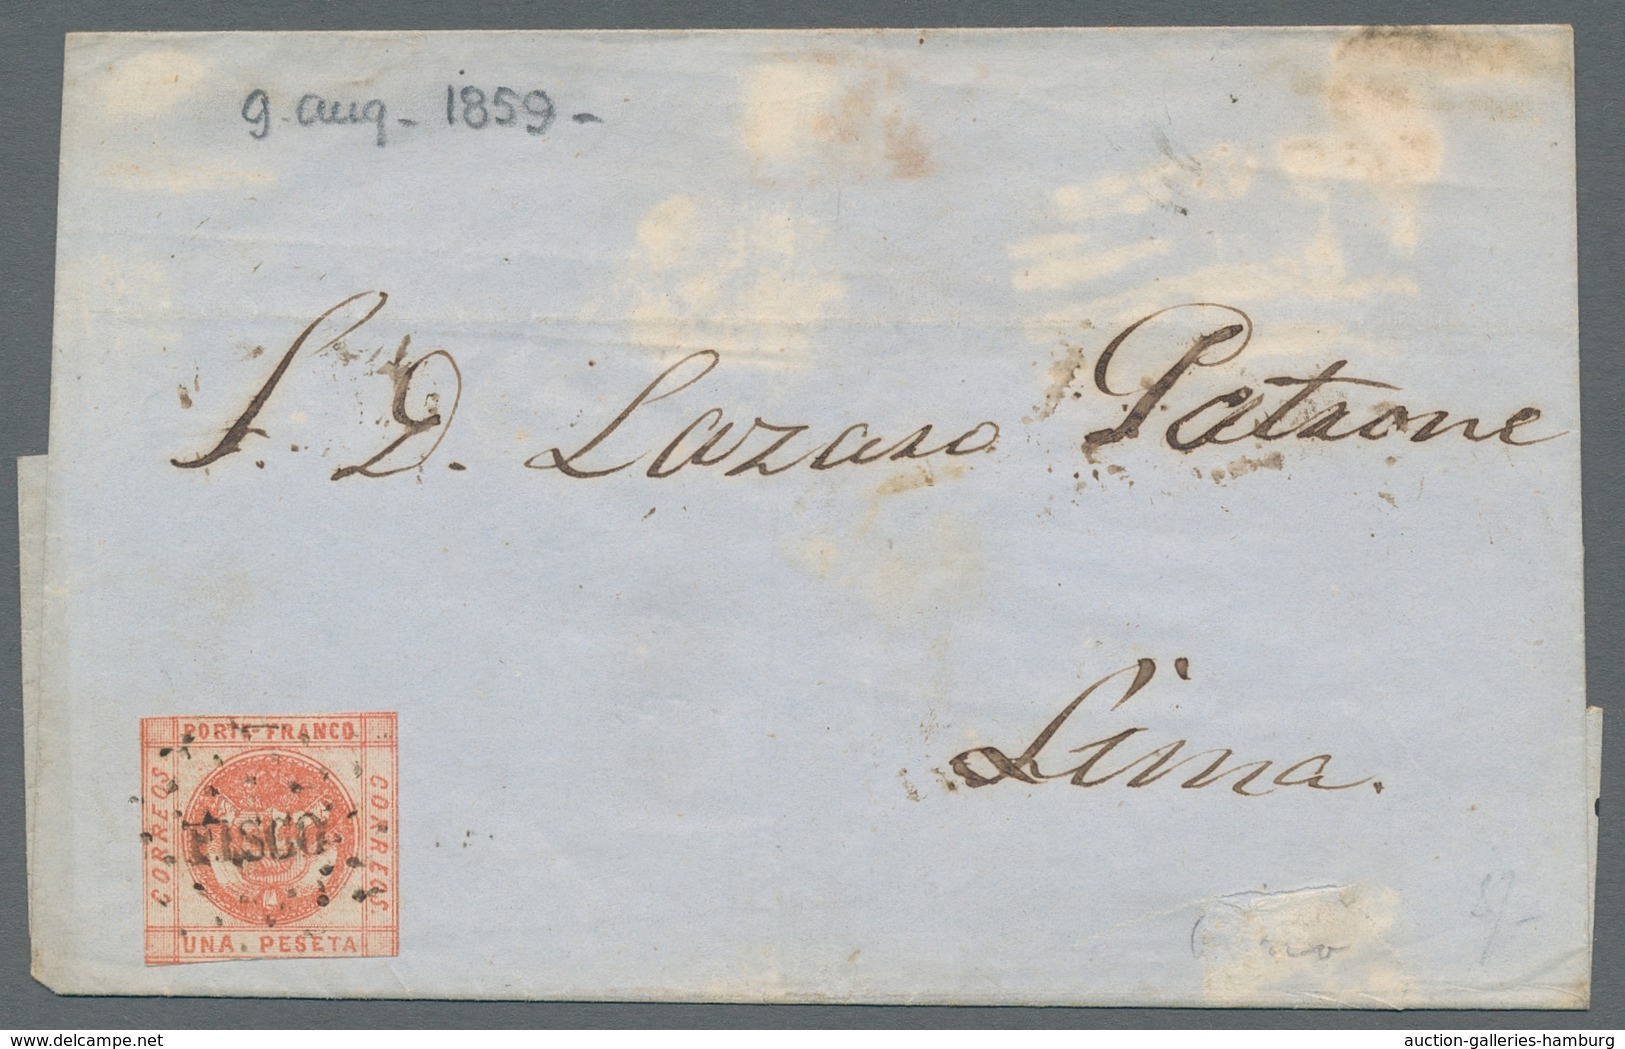 Peru: 1858, "1 Pes. Wappen", farbfrischer vollrandiger Wert mit klarem TRUX. auf Behördenbrief, Fran